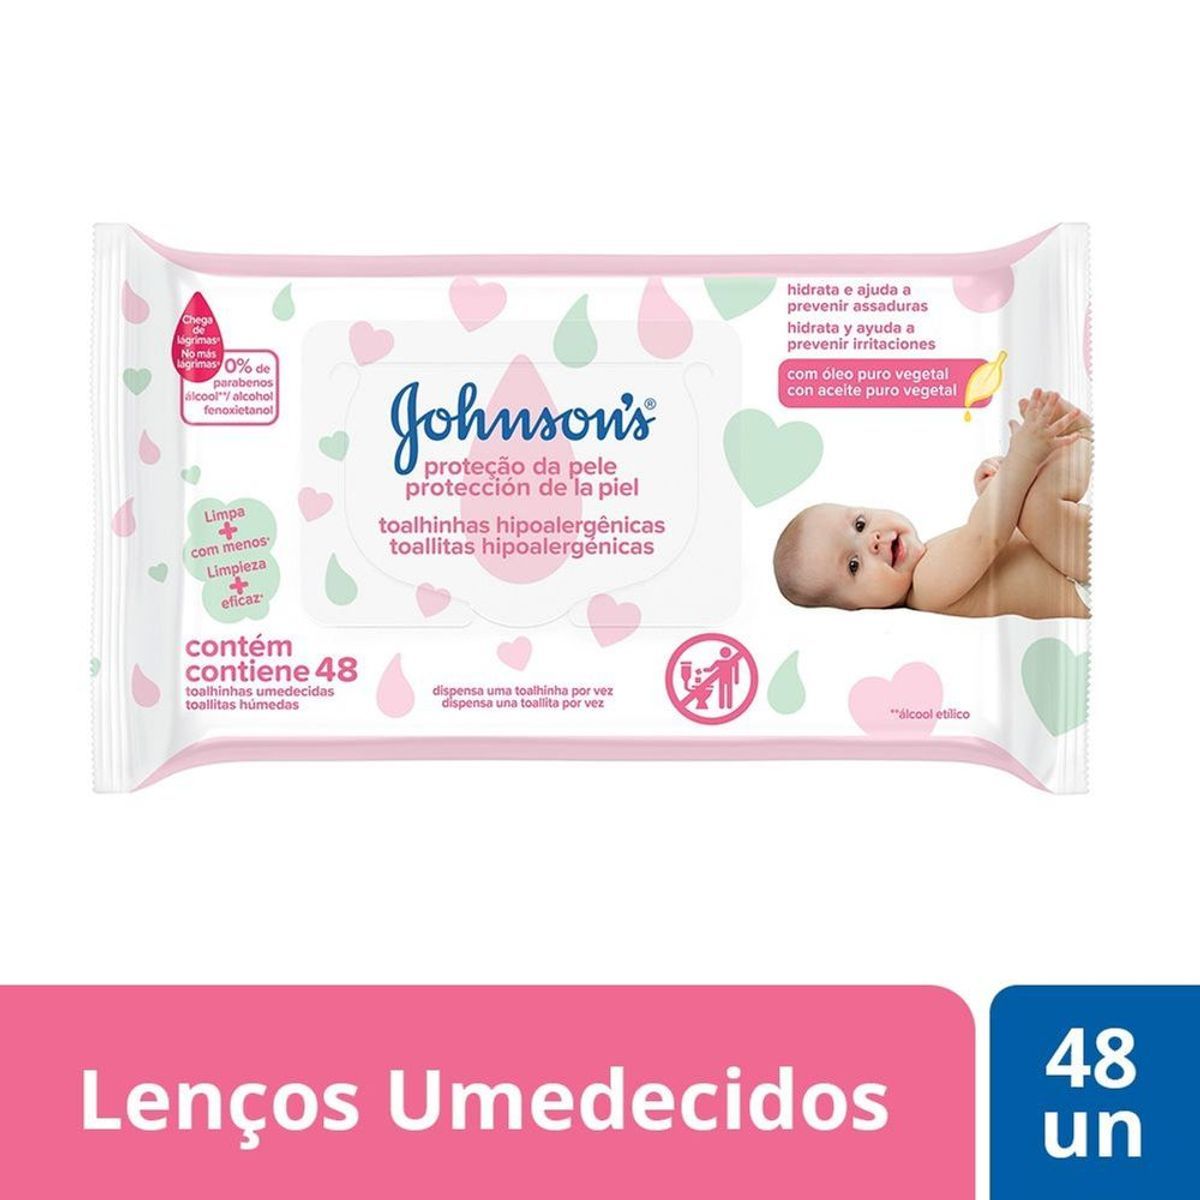 Lenços Umedecidos Johnson's Baby Extra Cuidado 48 unidades image number 1